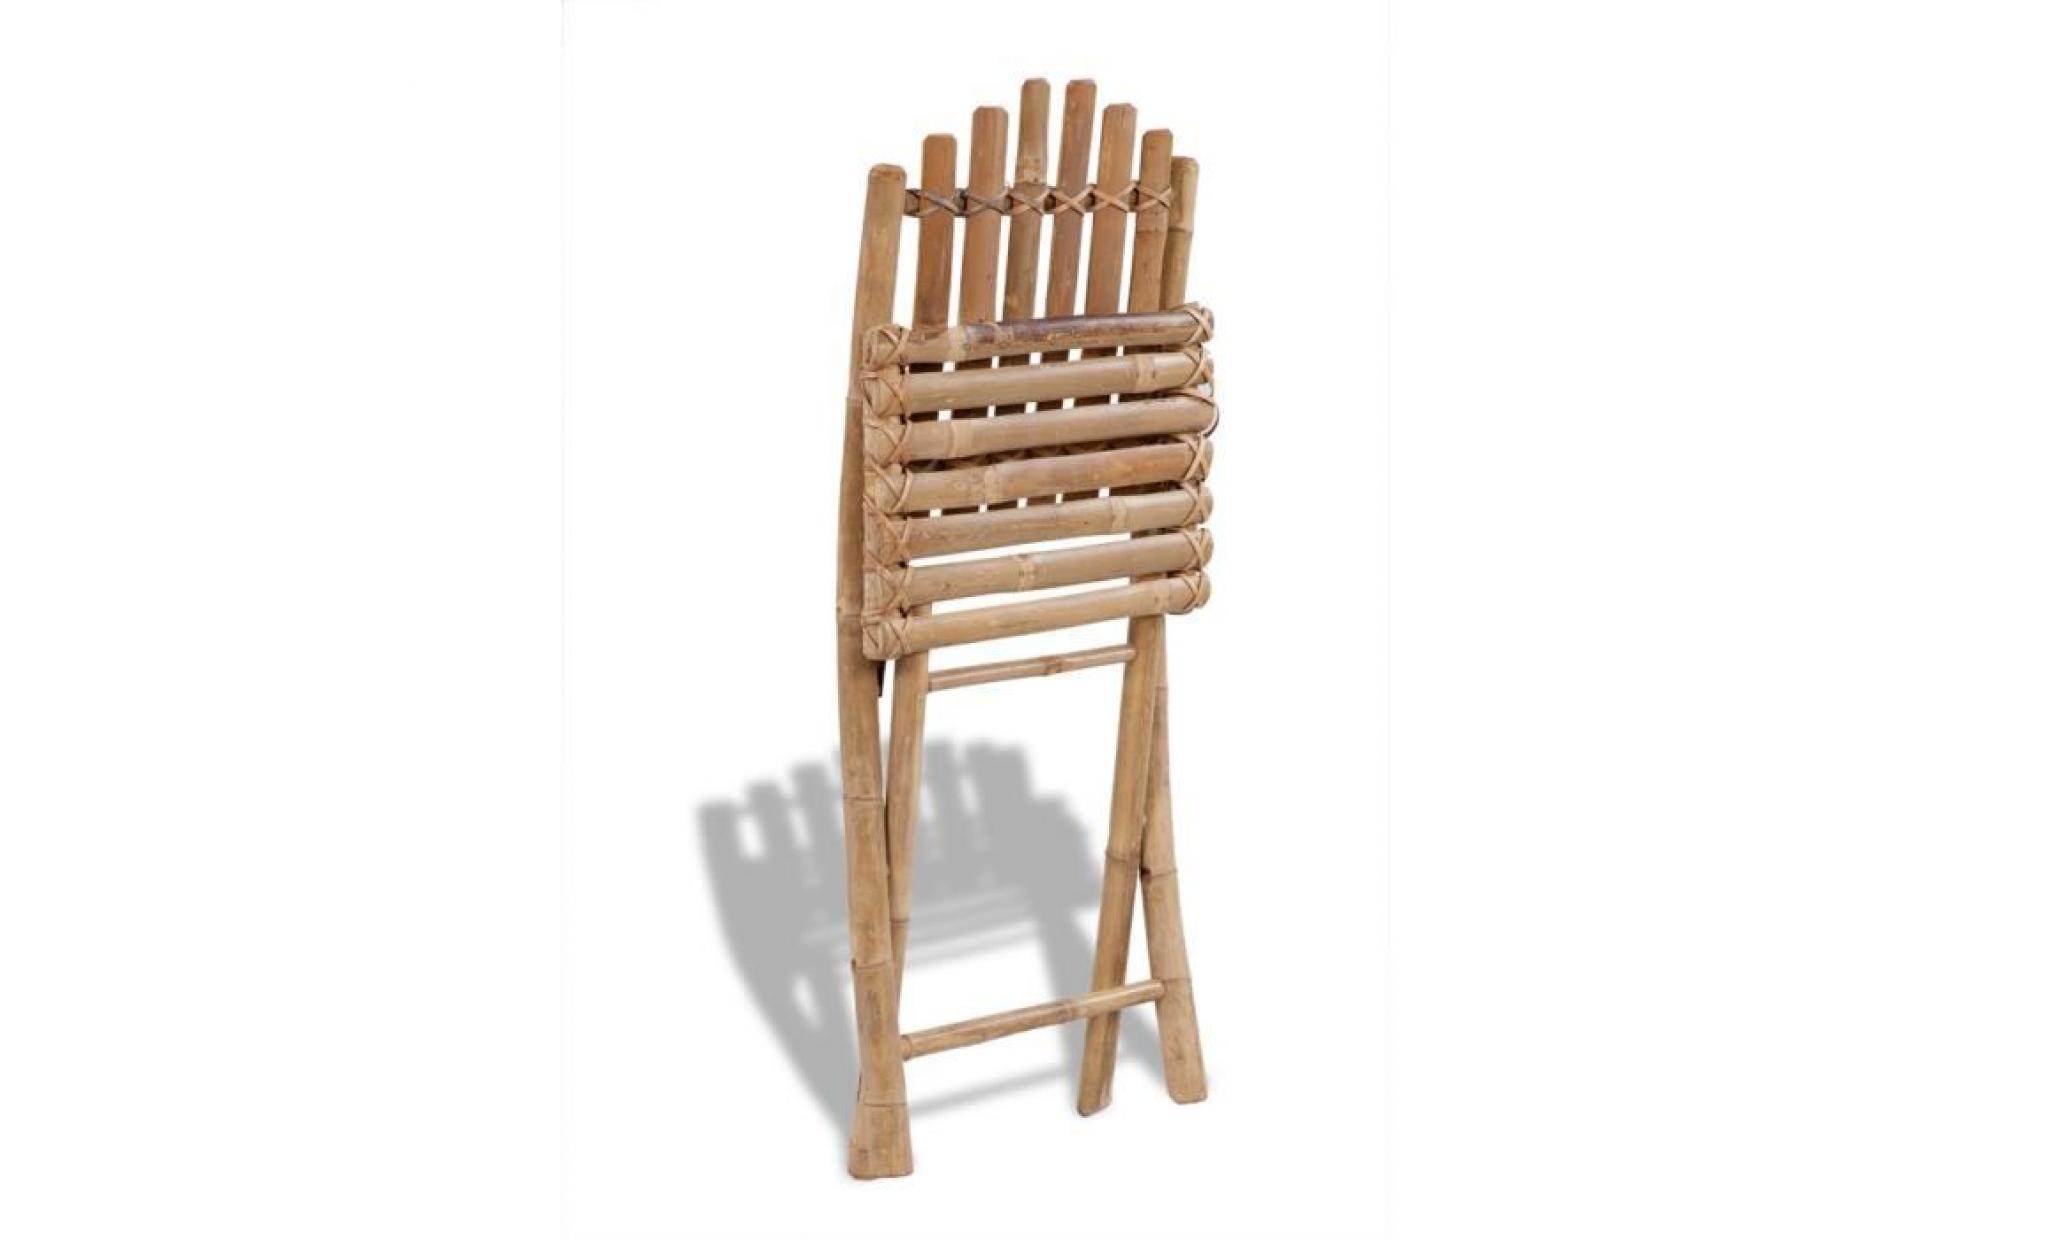 cet ensemble de 4 chaises sera un excellent choix pour les repas en plein air dans le jardin ou le patio. en bambou massif, ces c...